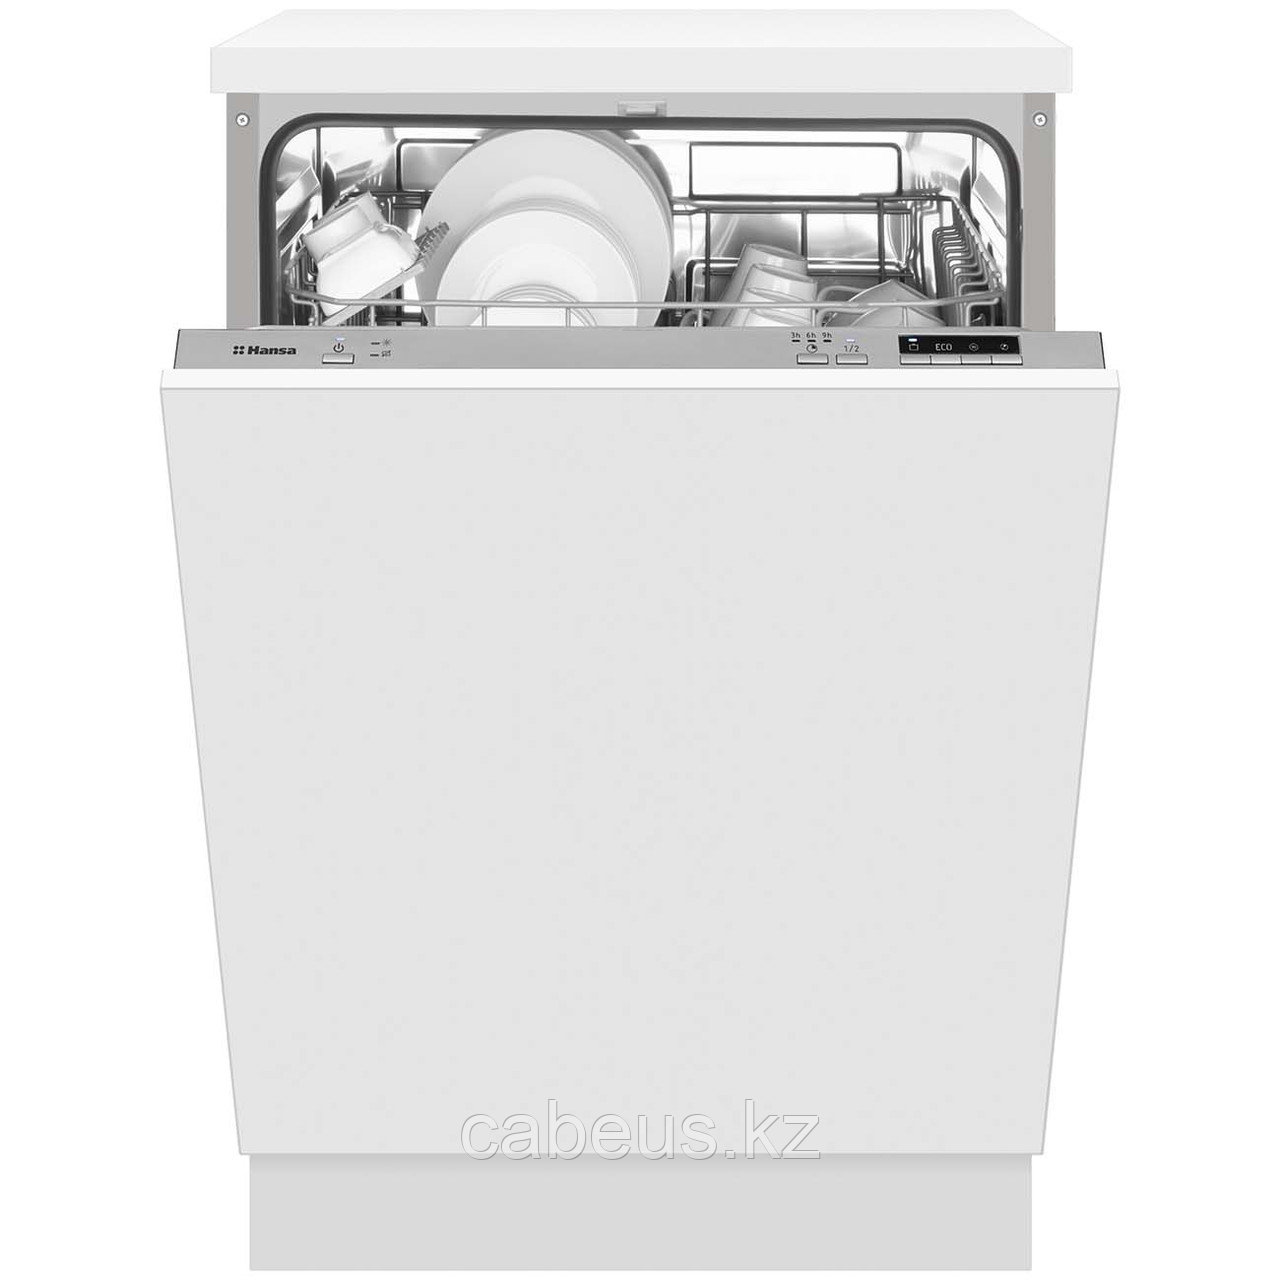 Встраиваемая посудомоечная машина 60 см Hansa ZIM674H